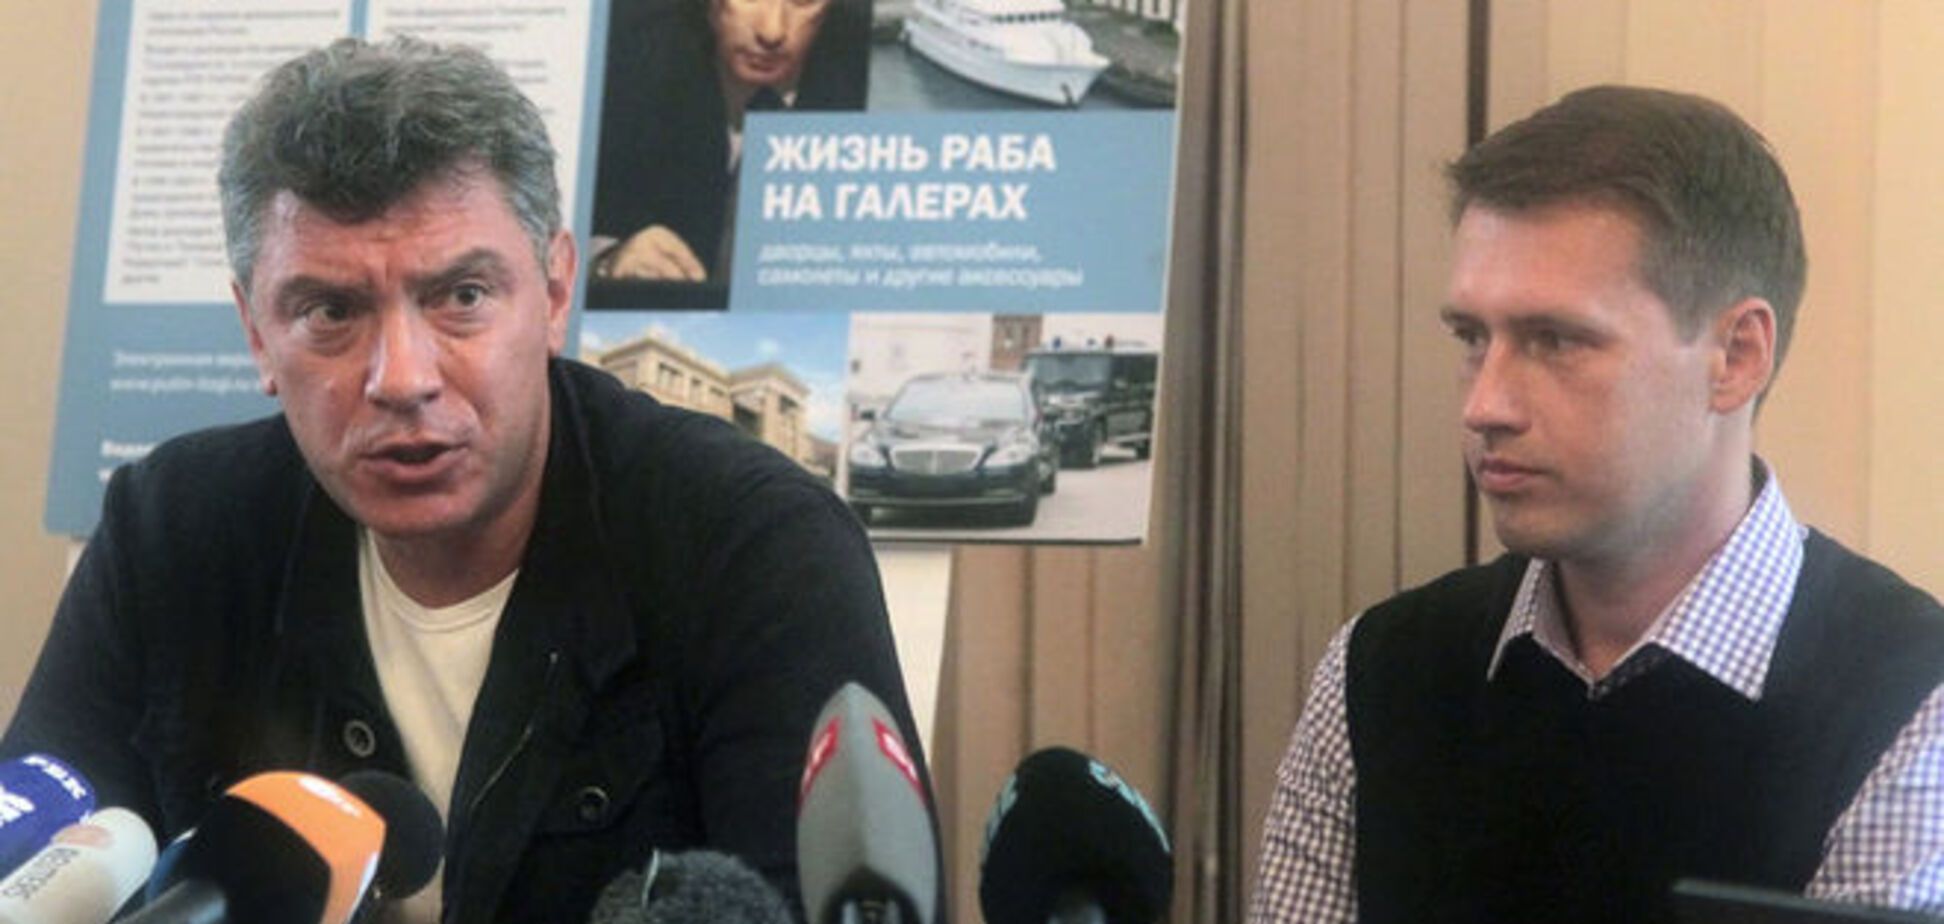 Следком России отрабатывает 'украинский след' в убийстве Немцова